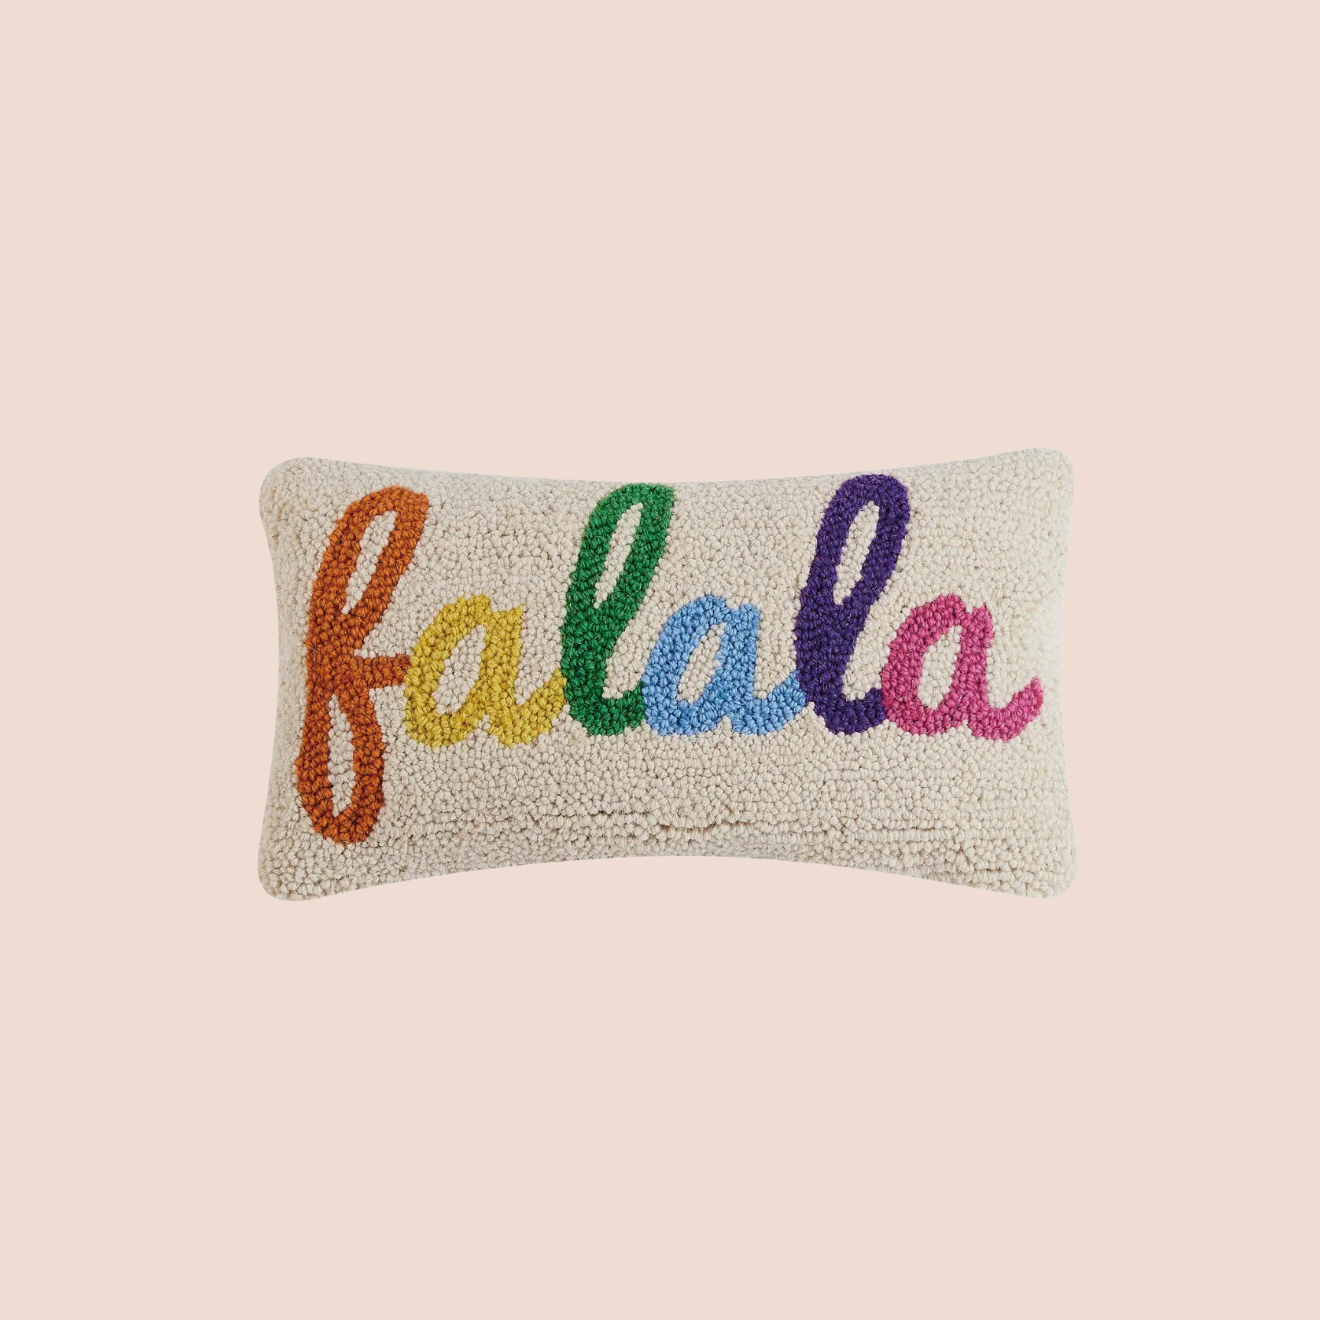 'Falala' Festive Cushion